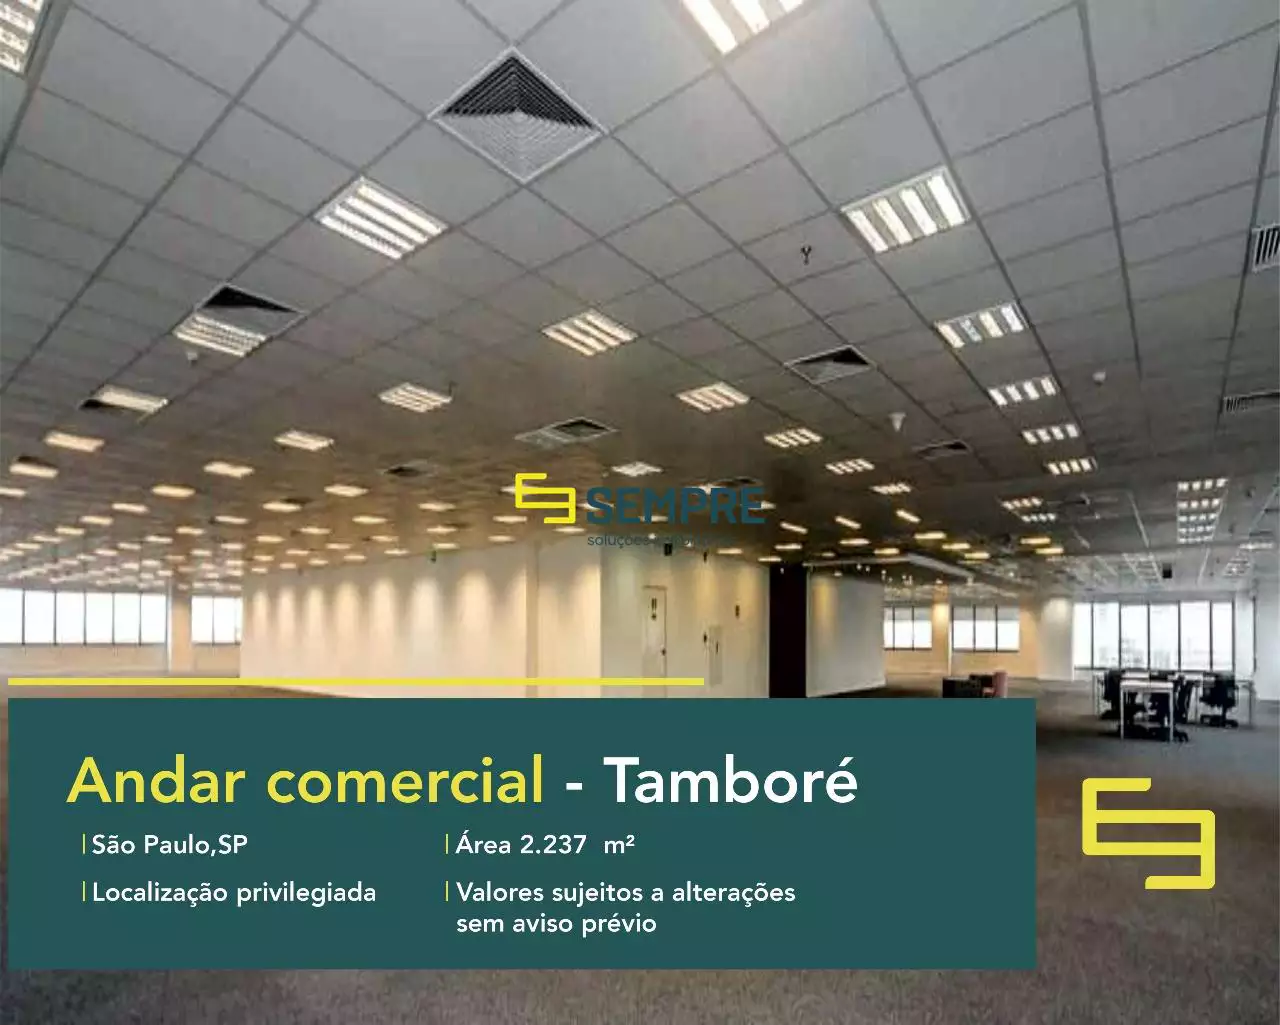 Laje corporativa em Tamboré para alugar em São Paulo, excelente localização. O estabelecimento comercial conta com área de 2.237 m².